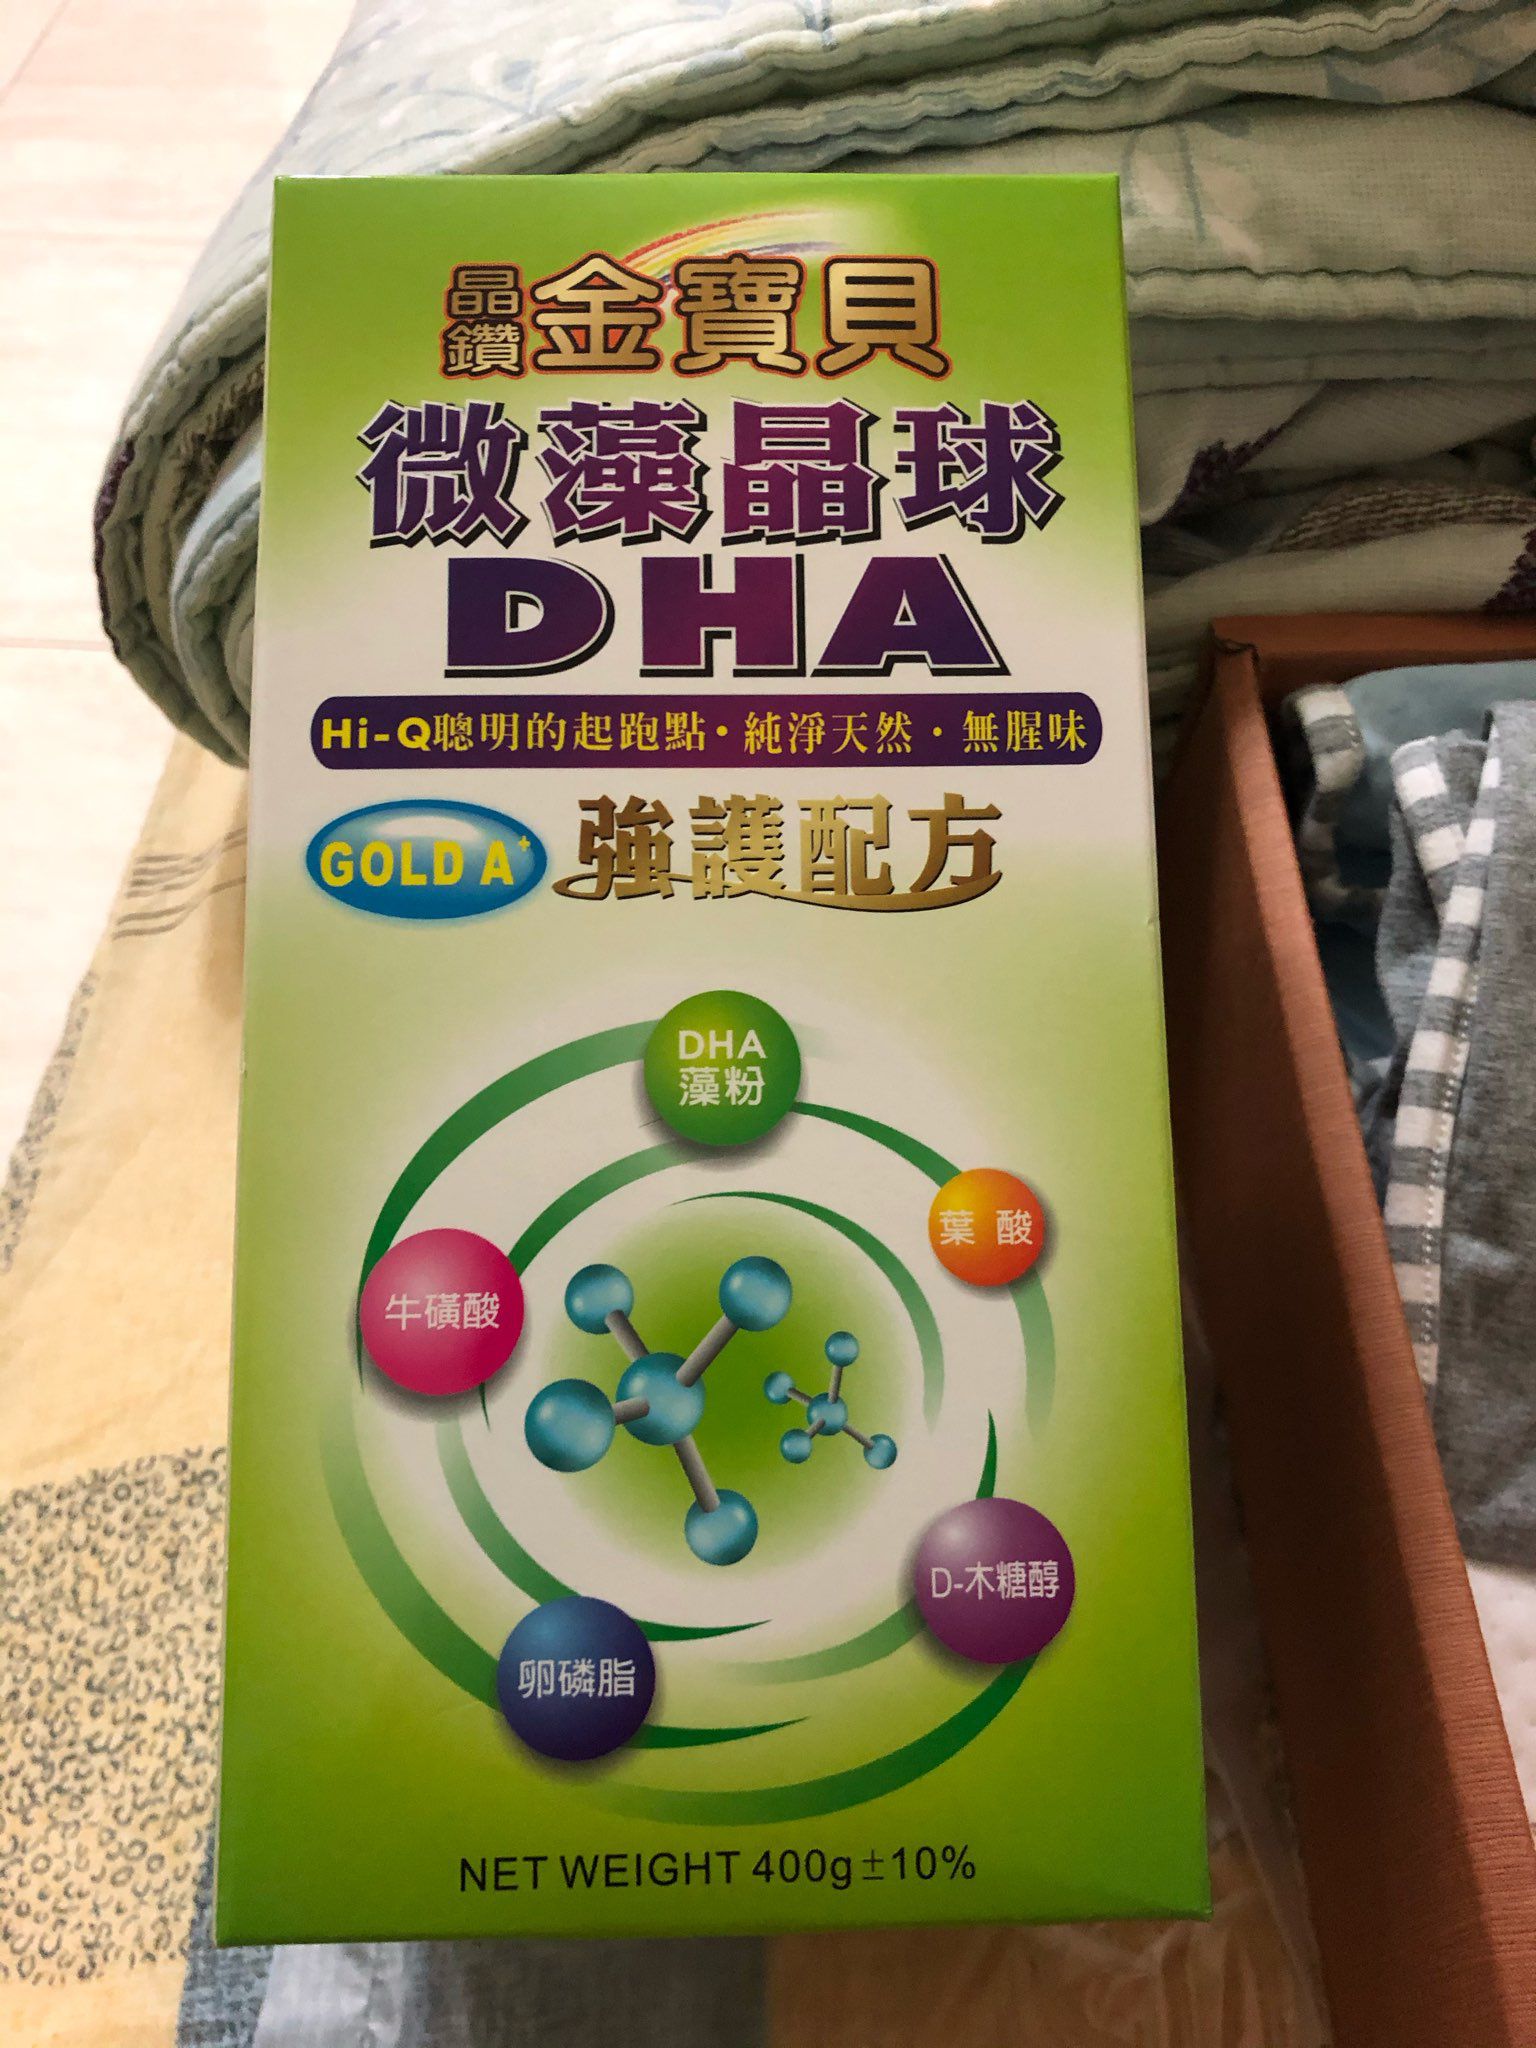 有媽咪給寶寶喝過「晶鑽金寶貝微藻晶球DHA」嗎